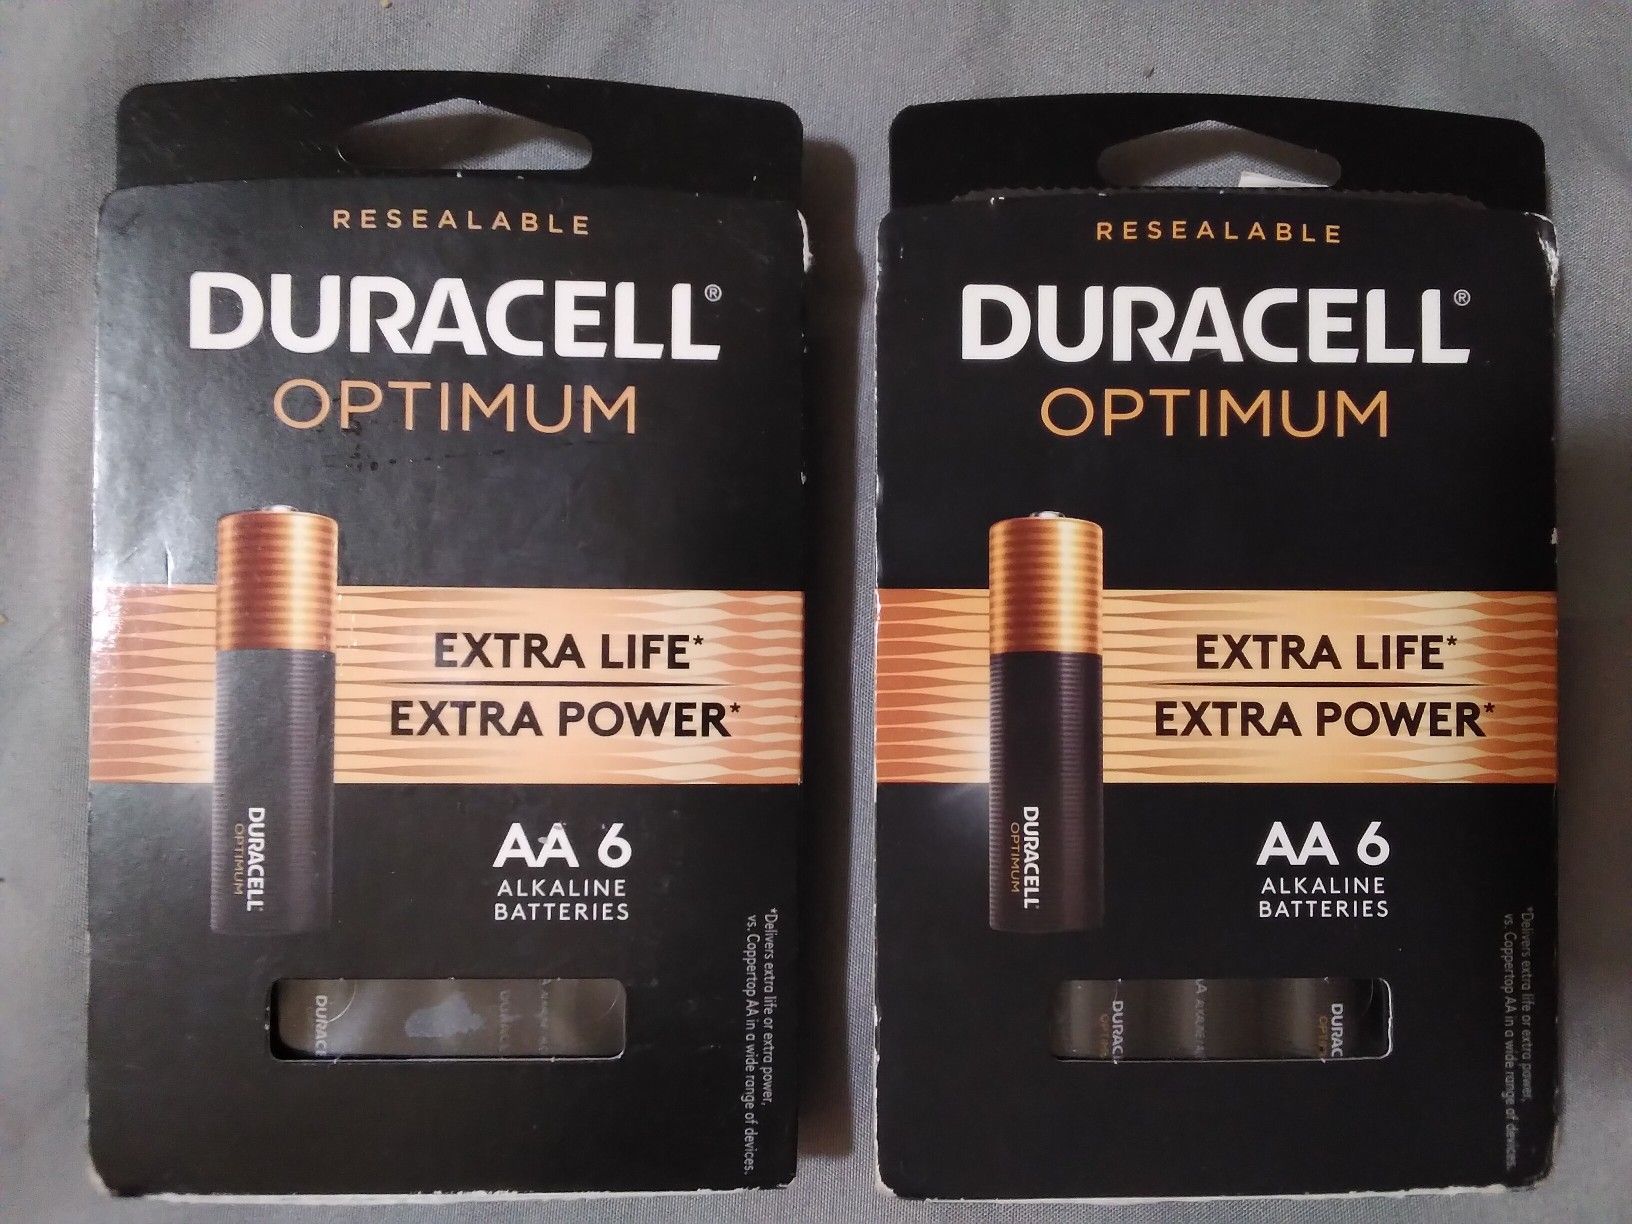 Duracell Optimum AA batteries